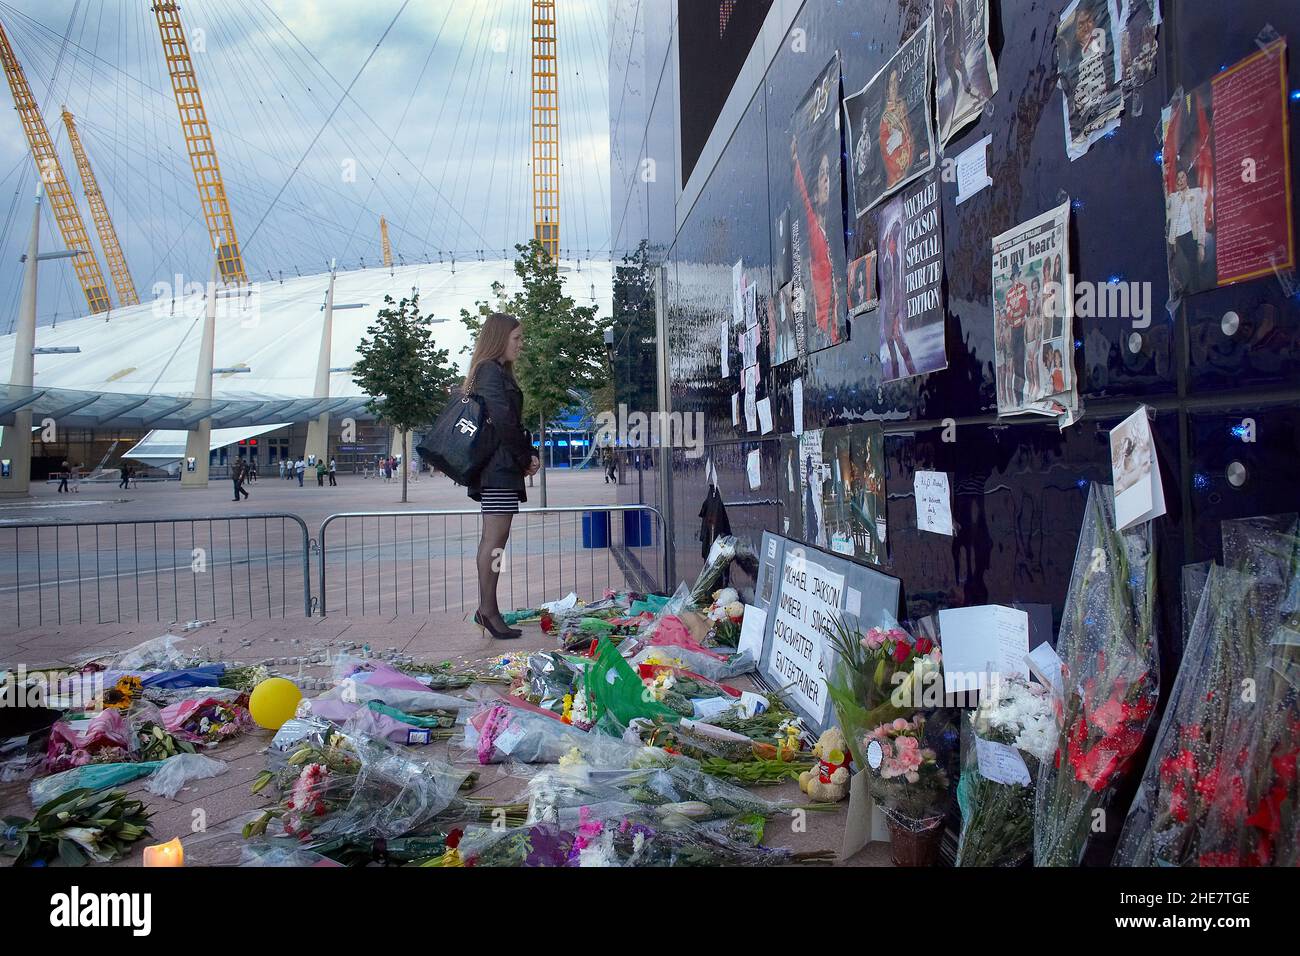 I fan di Michael Jackson si trovano in un santuario del cantante americano, Tribute ha lasciato un santuario per Michael Jackson, fuori dalla O2 Arena di Londra. Foto Stock